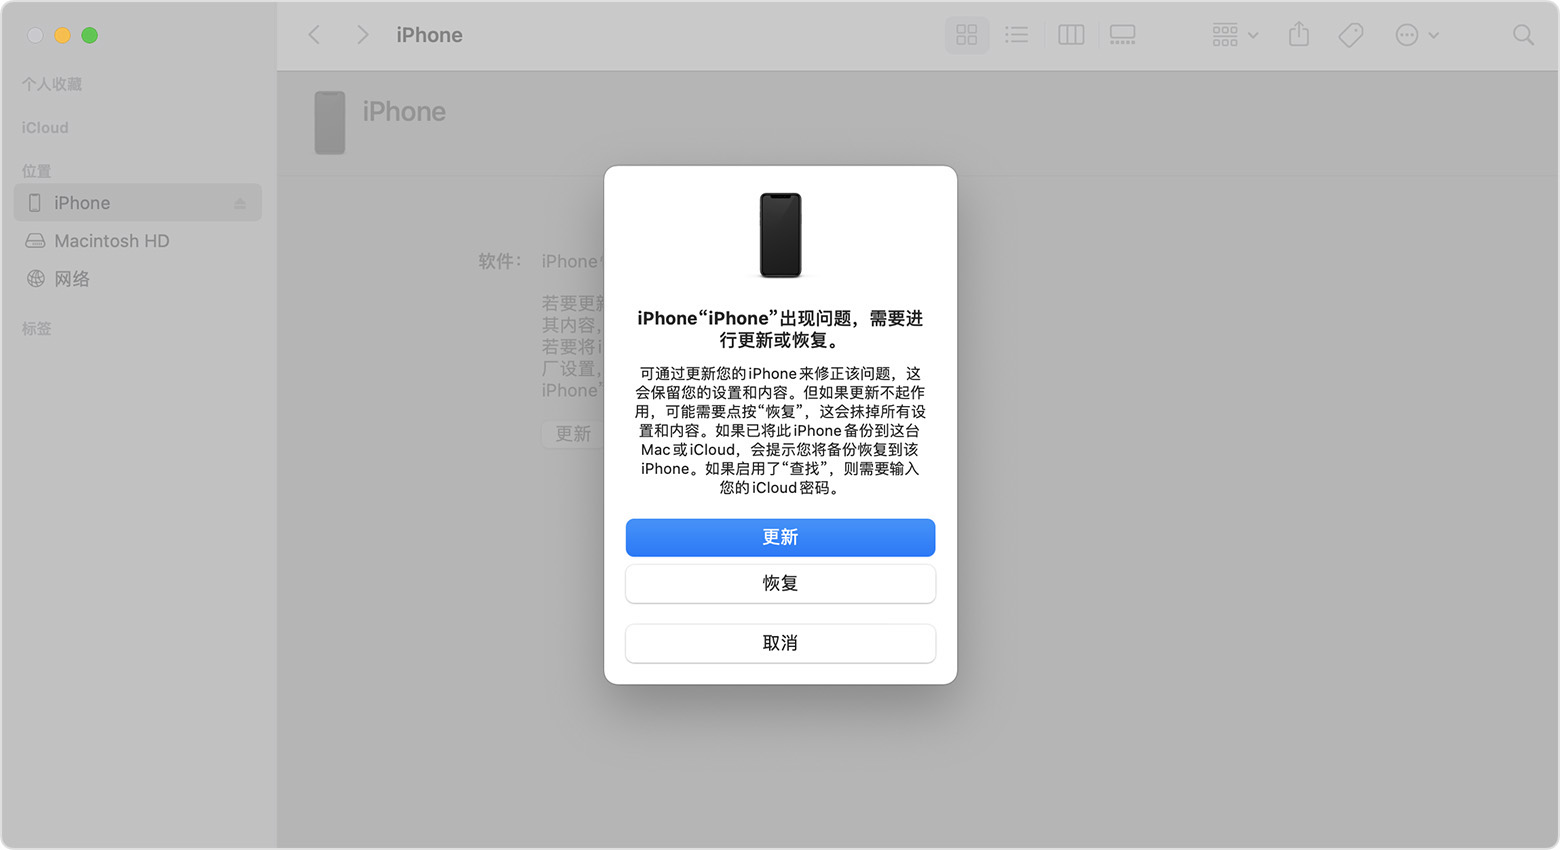 “访达”窗口显示了一条提示，其中包含用于更新或恢复 iPhone 的选项。“更新”处于选中状态。